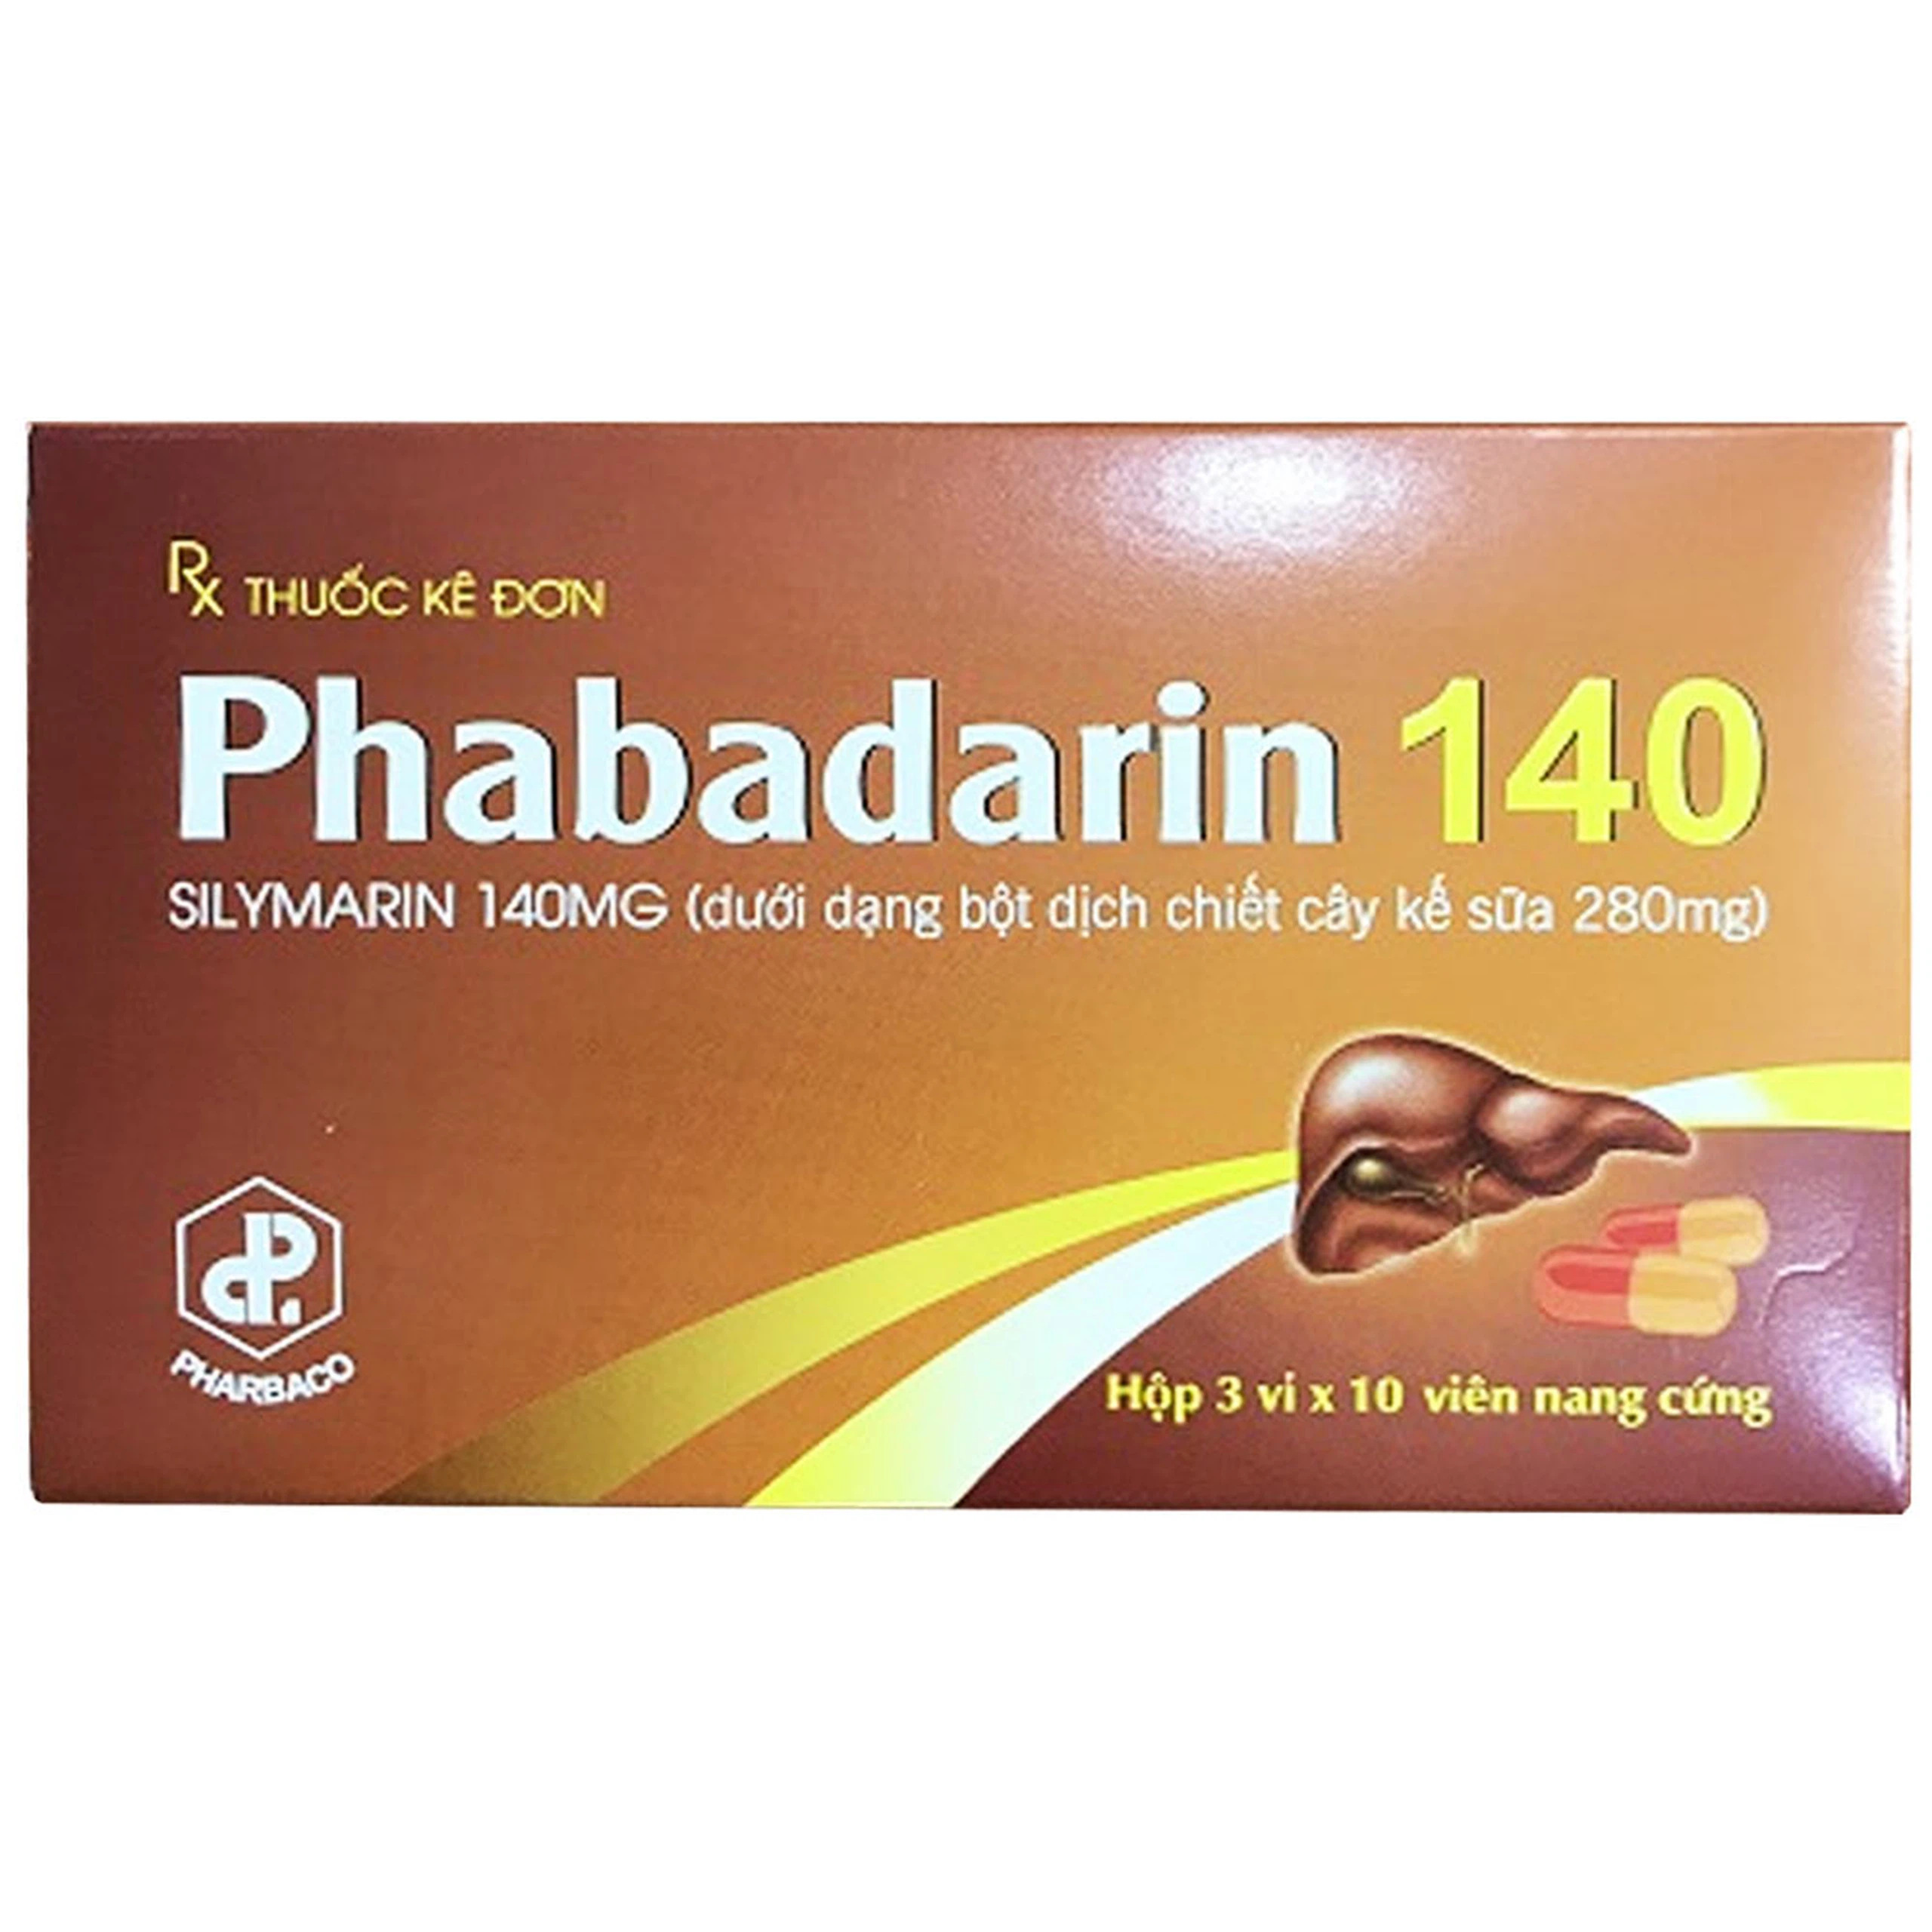 Thuốc Phabadarin 140 Pharbaco hỗ trợ bảo vệ tế bào gan (3 vỉ x 10 viên) 